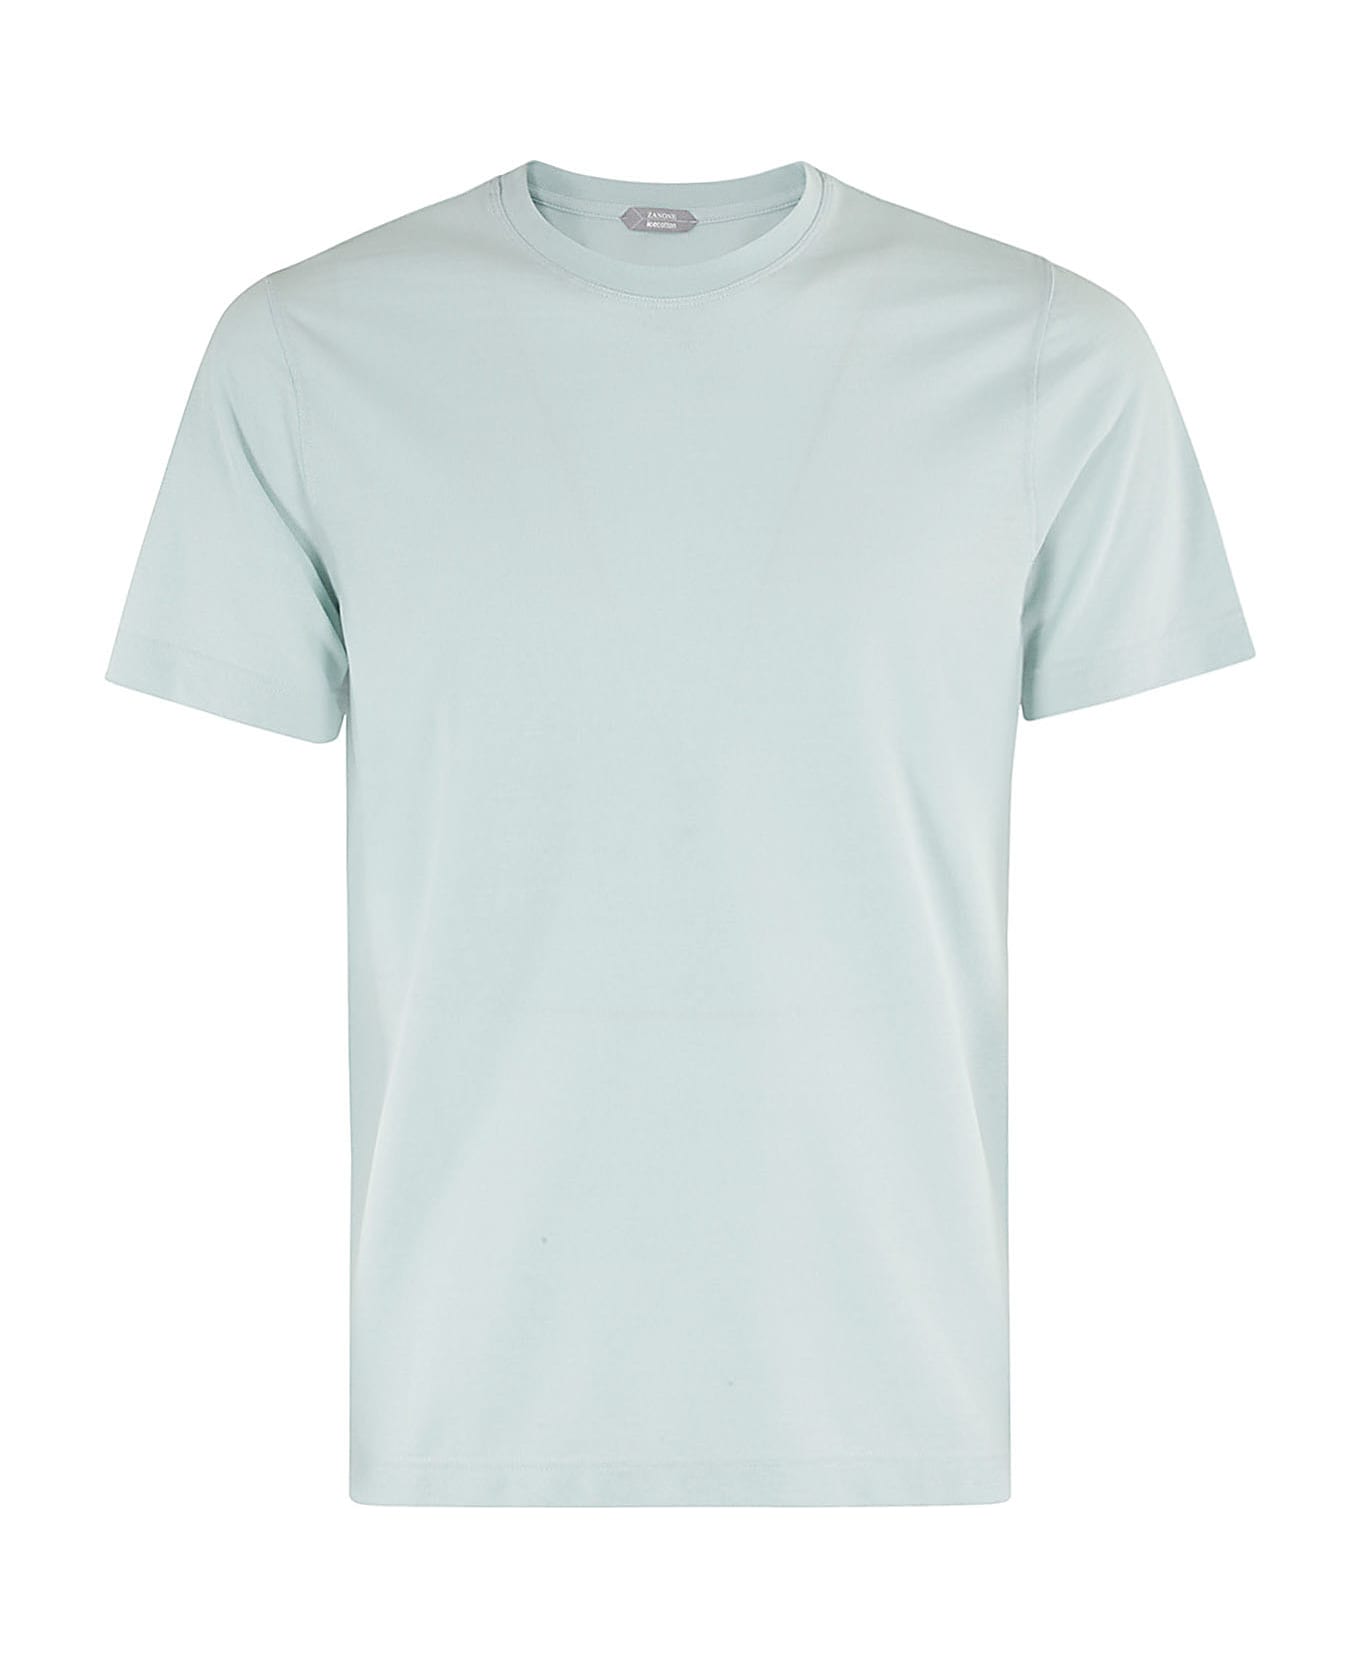 Zanone T Shirt Mc Slim Fit Ice Cotton - Verde Acqua